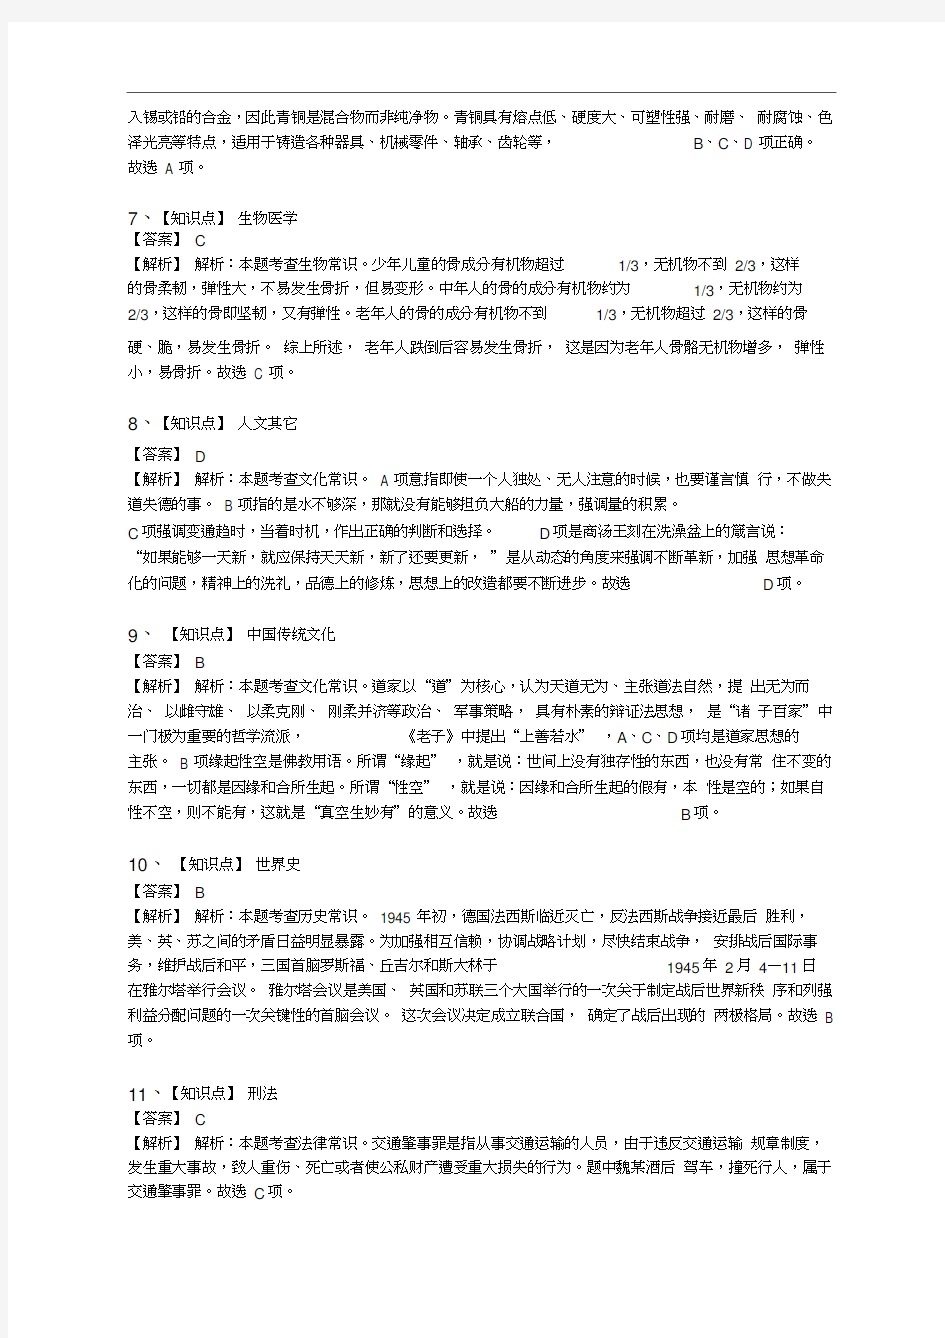 2015广州公务员行测真题答案